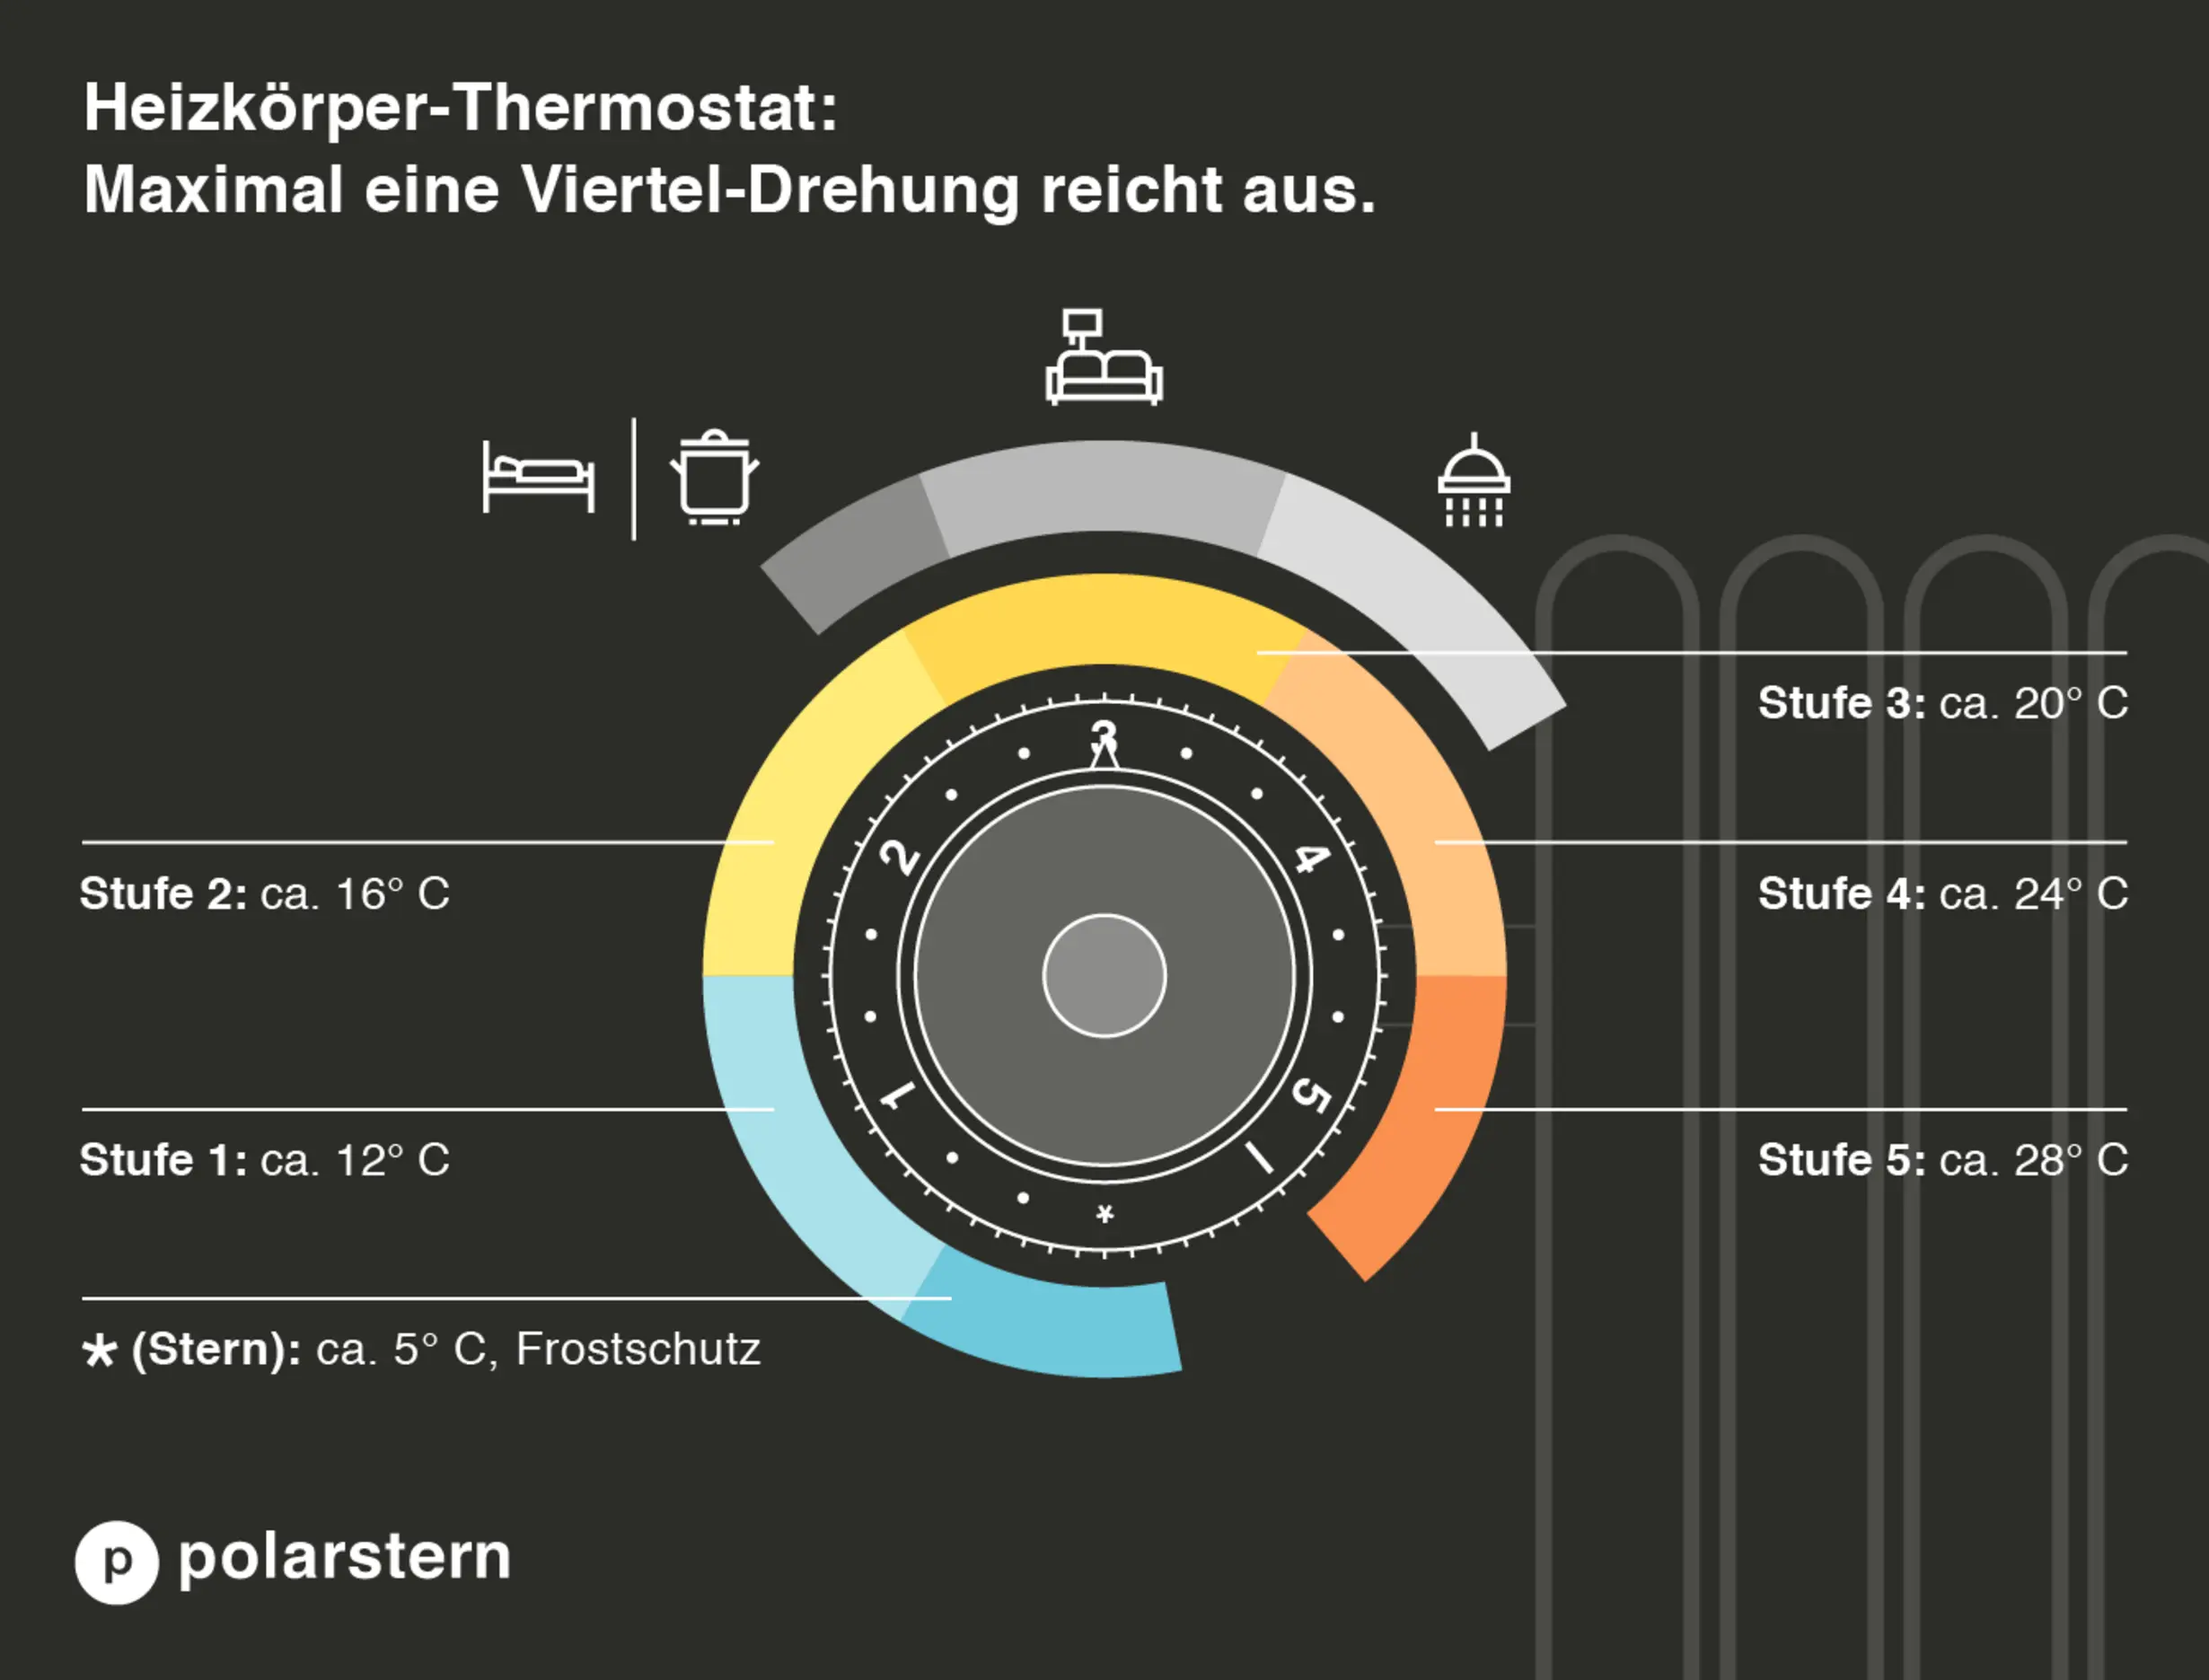 Infografik zum Thermostat welche Stufen welche Temperatur bedeuten